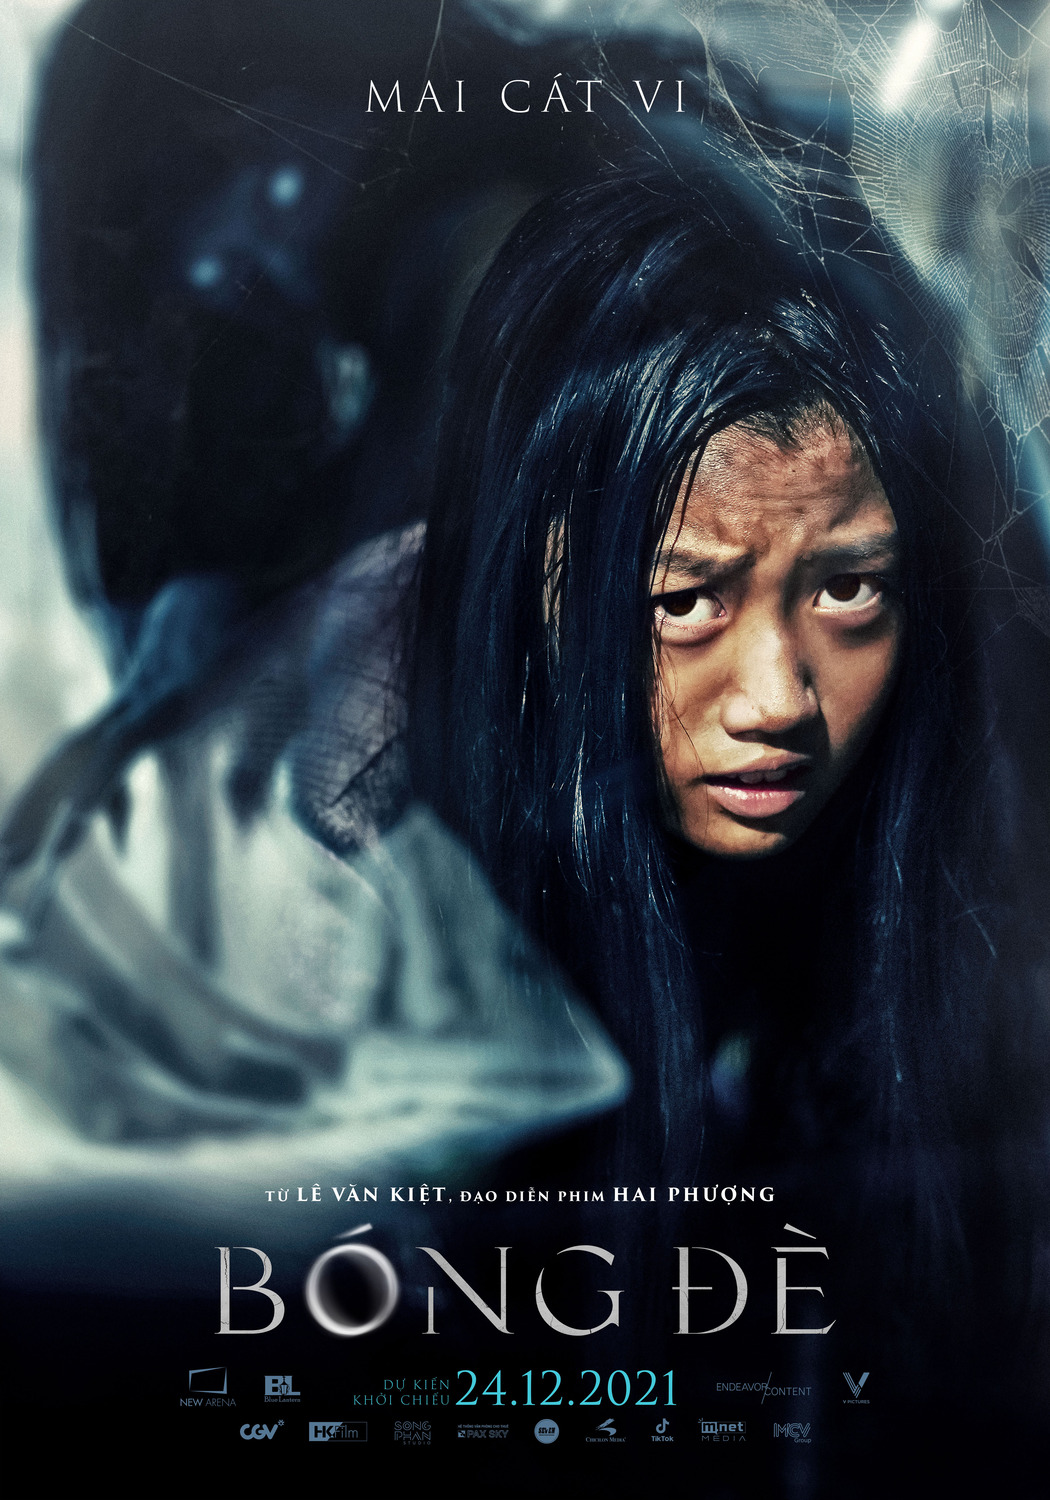 Extra Large Movie Poster Image for Bóng Ðè (#7 of 7)